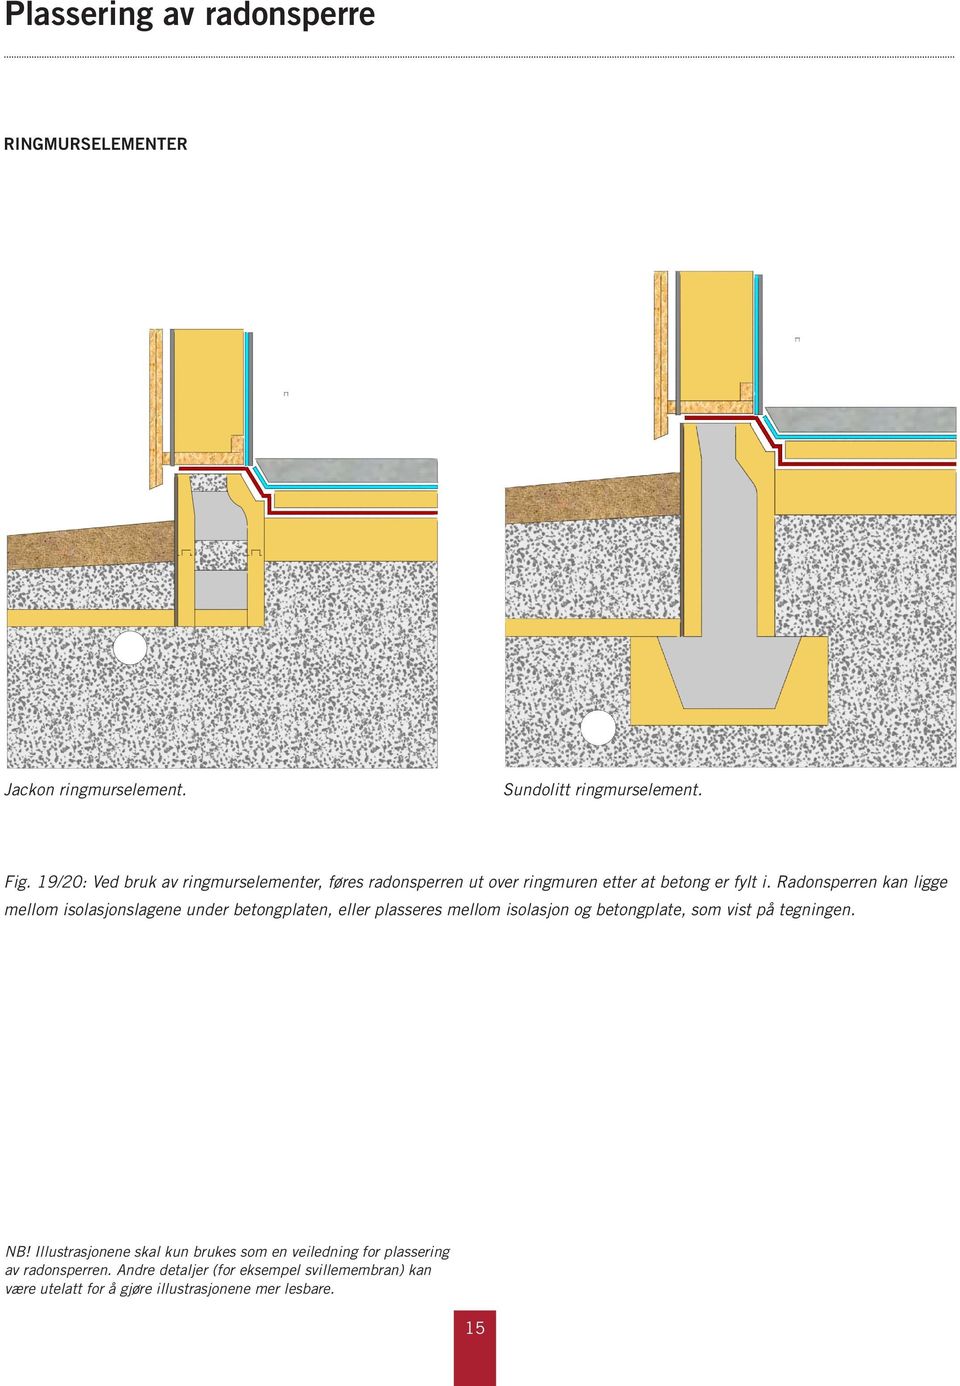 Radonsperren kan ligge mellom isolasjonslagene under betongplaten, eller plasseres mellom isolasjon og betongplate, som vist på